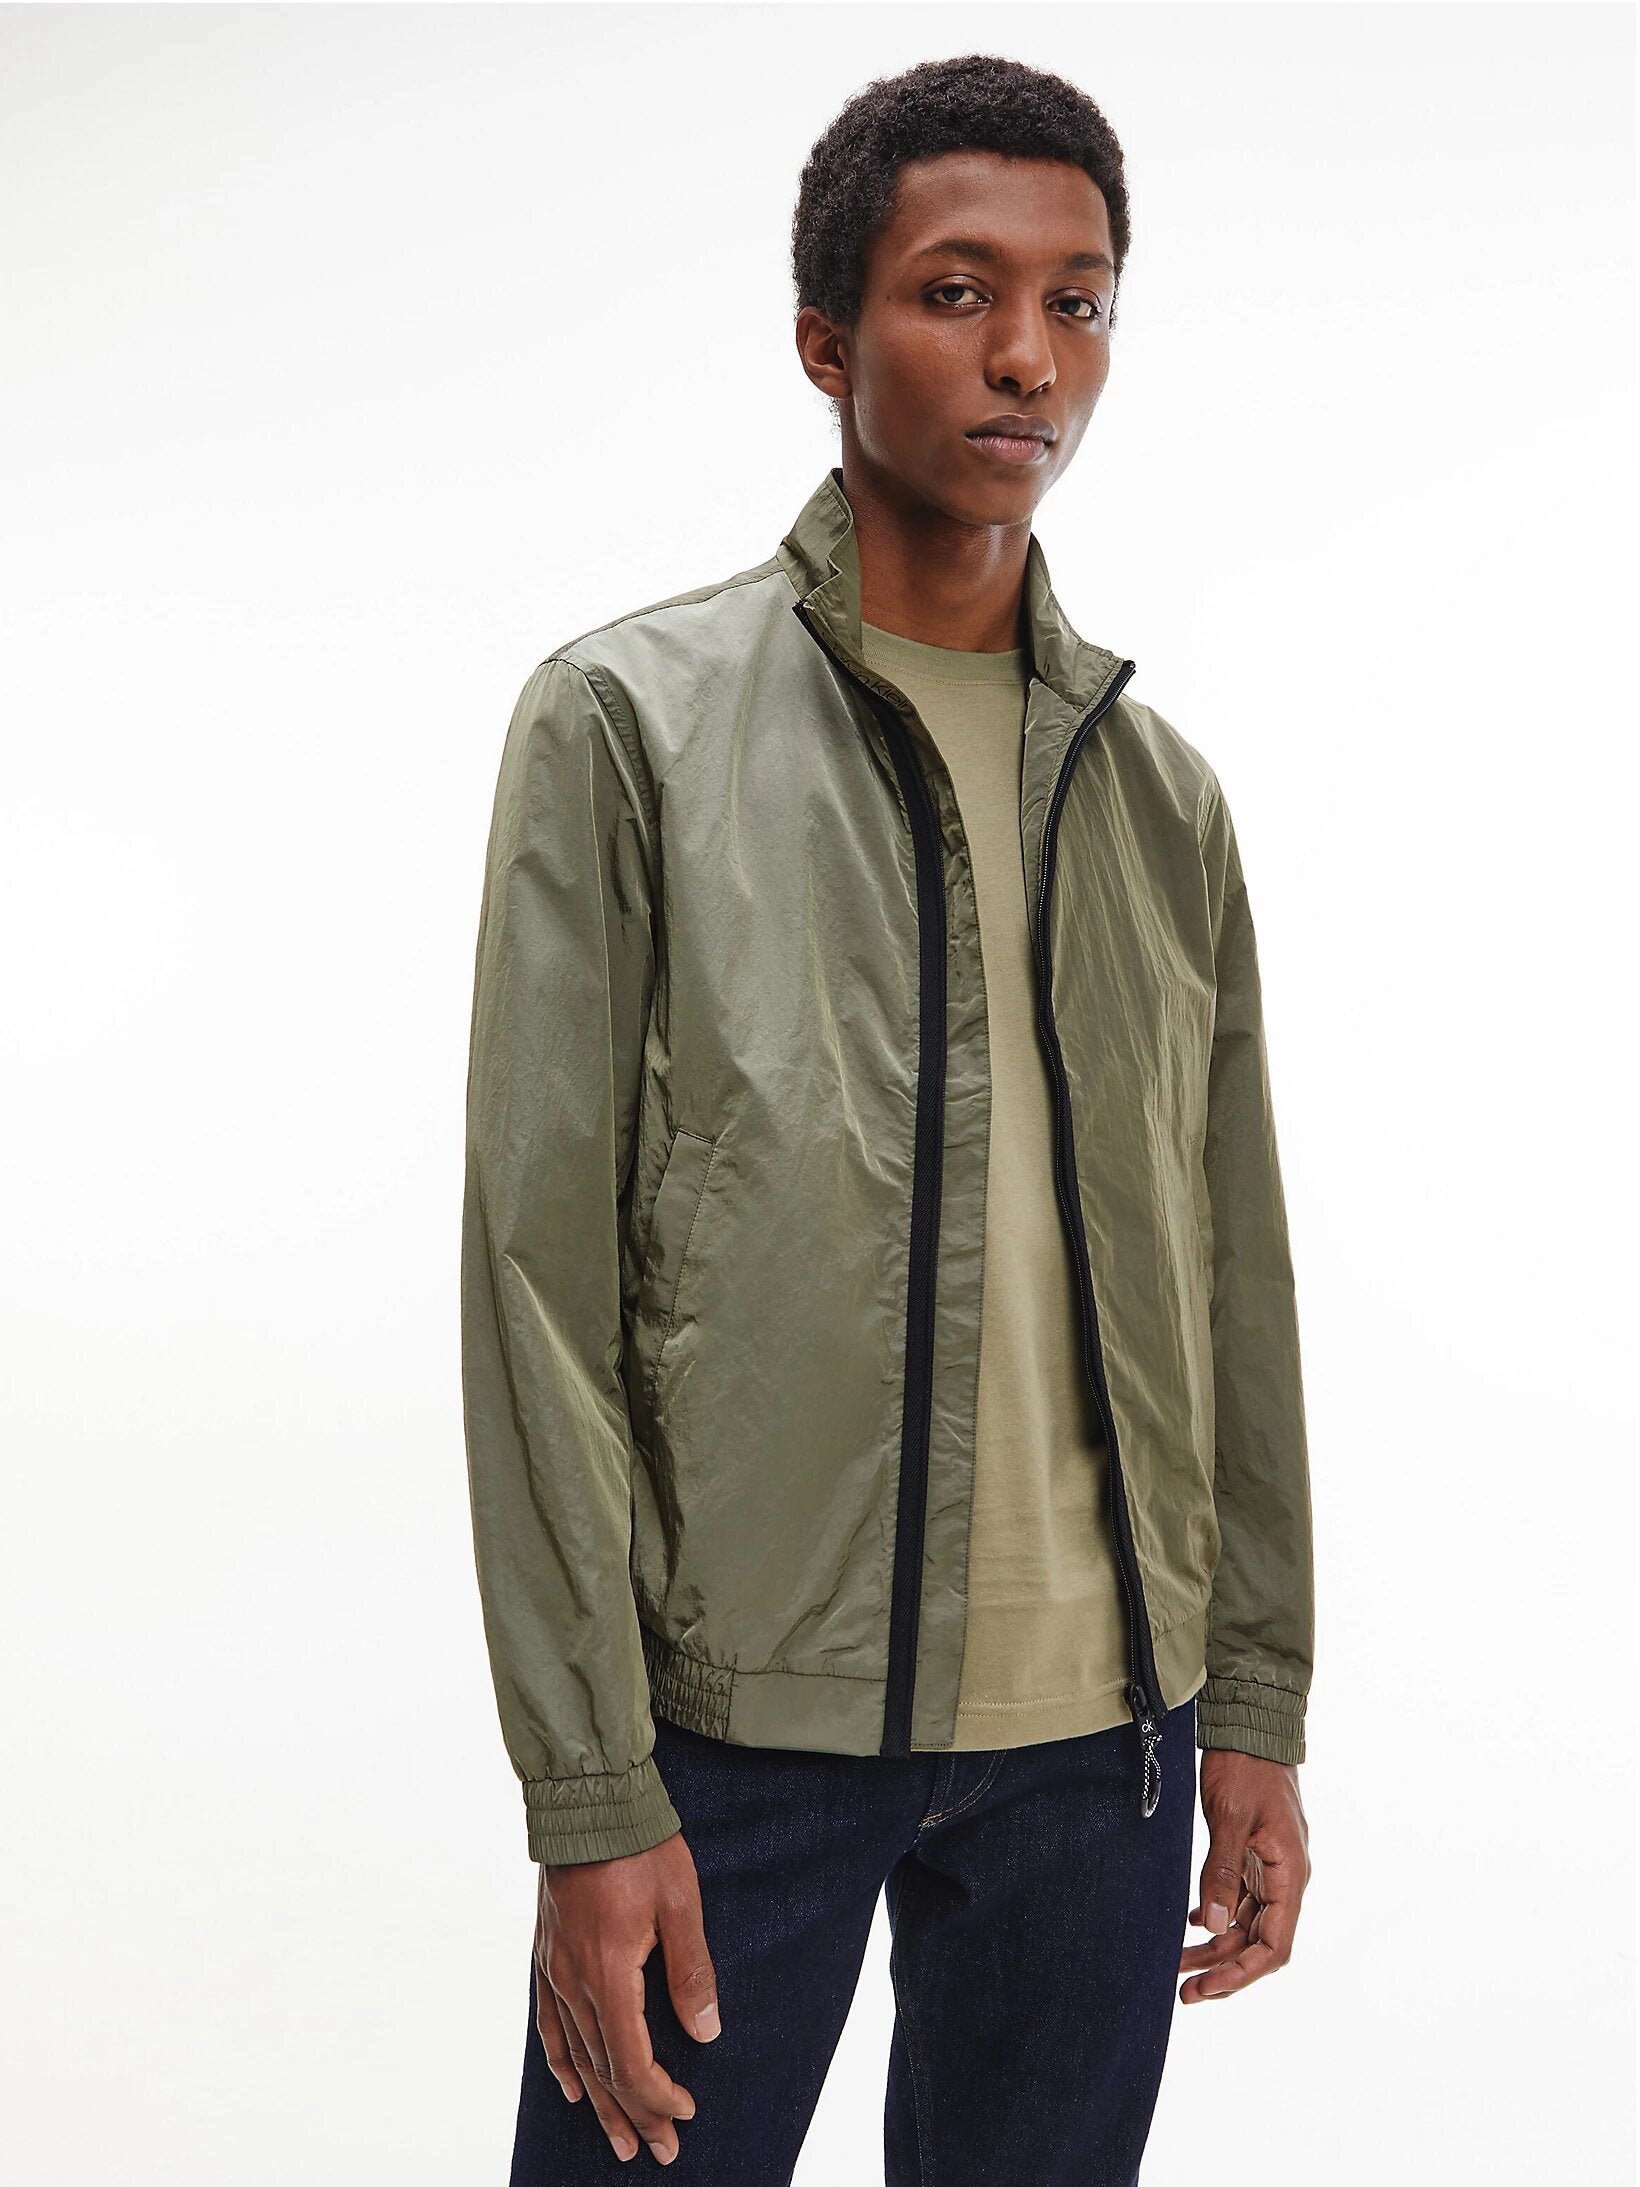 Khakifarbene Jacke mit Reißverschluss von Calvin Klein